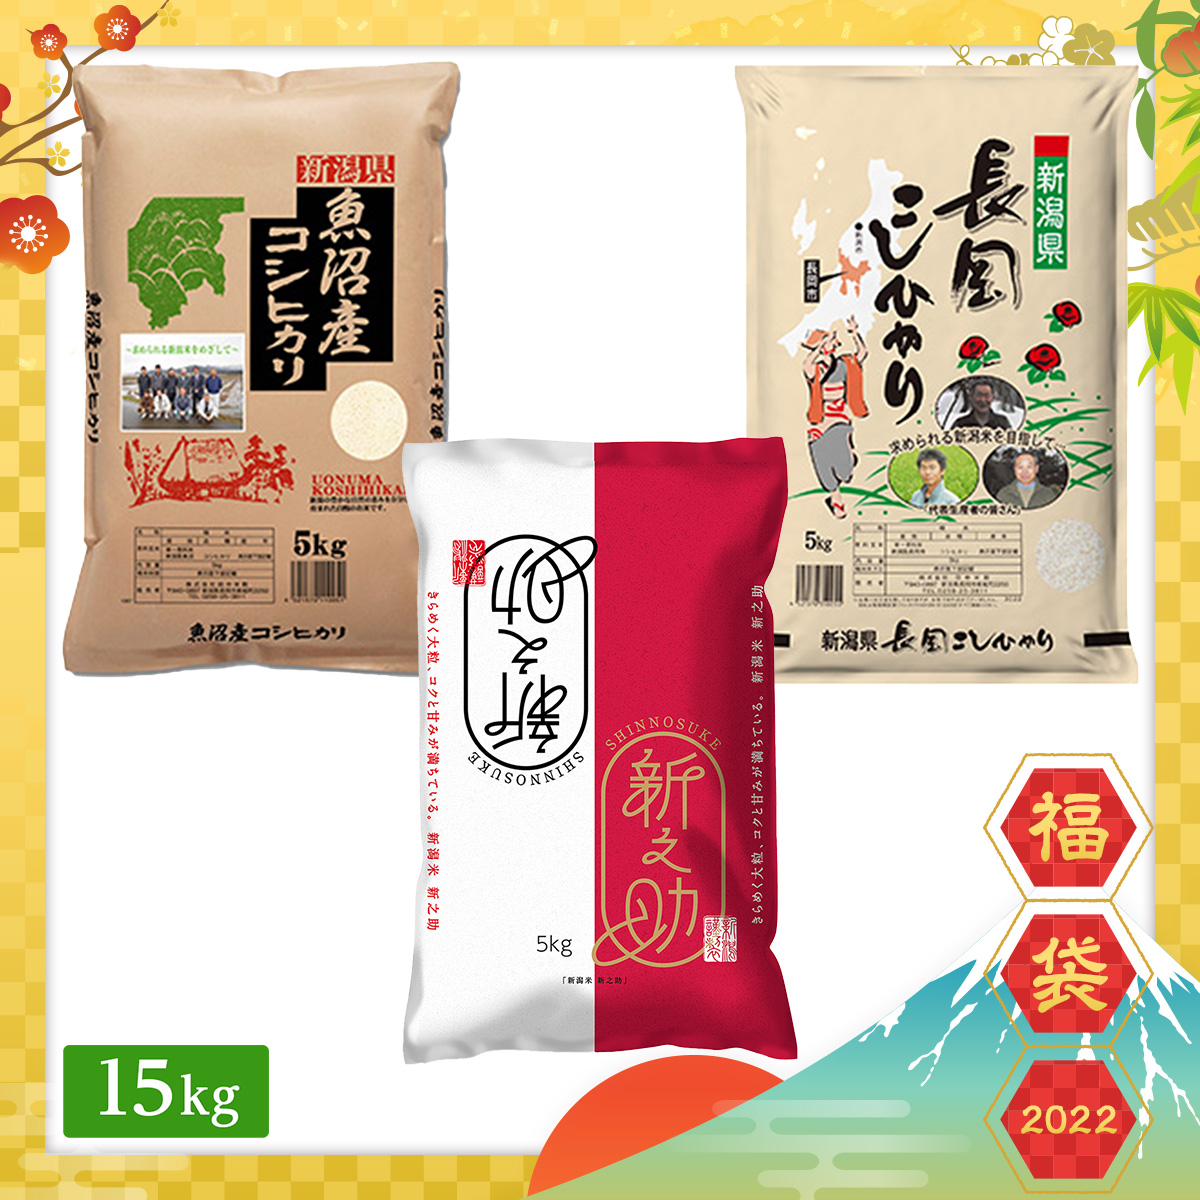 【2022年福袋】新潟県産 ブランド米 食べ比べセット 15kg(5kg×3袋)